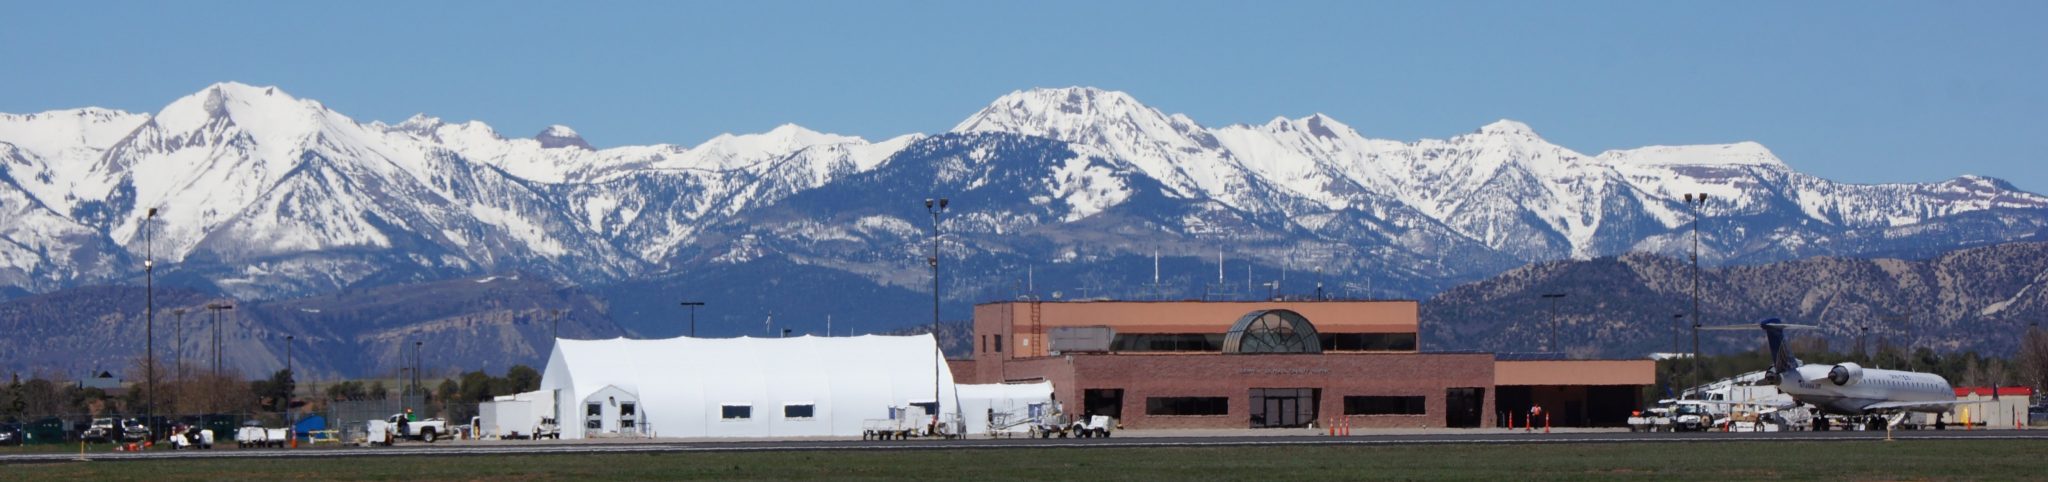 Durango-La Plata County Airport